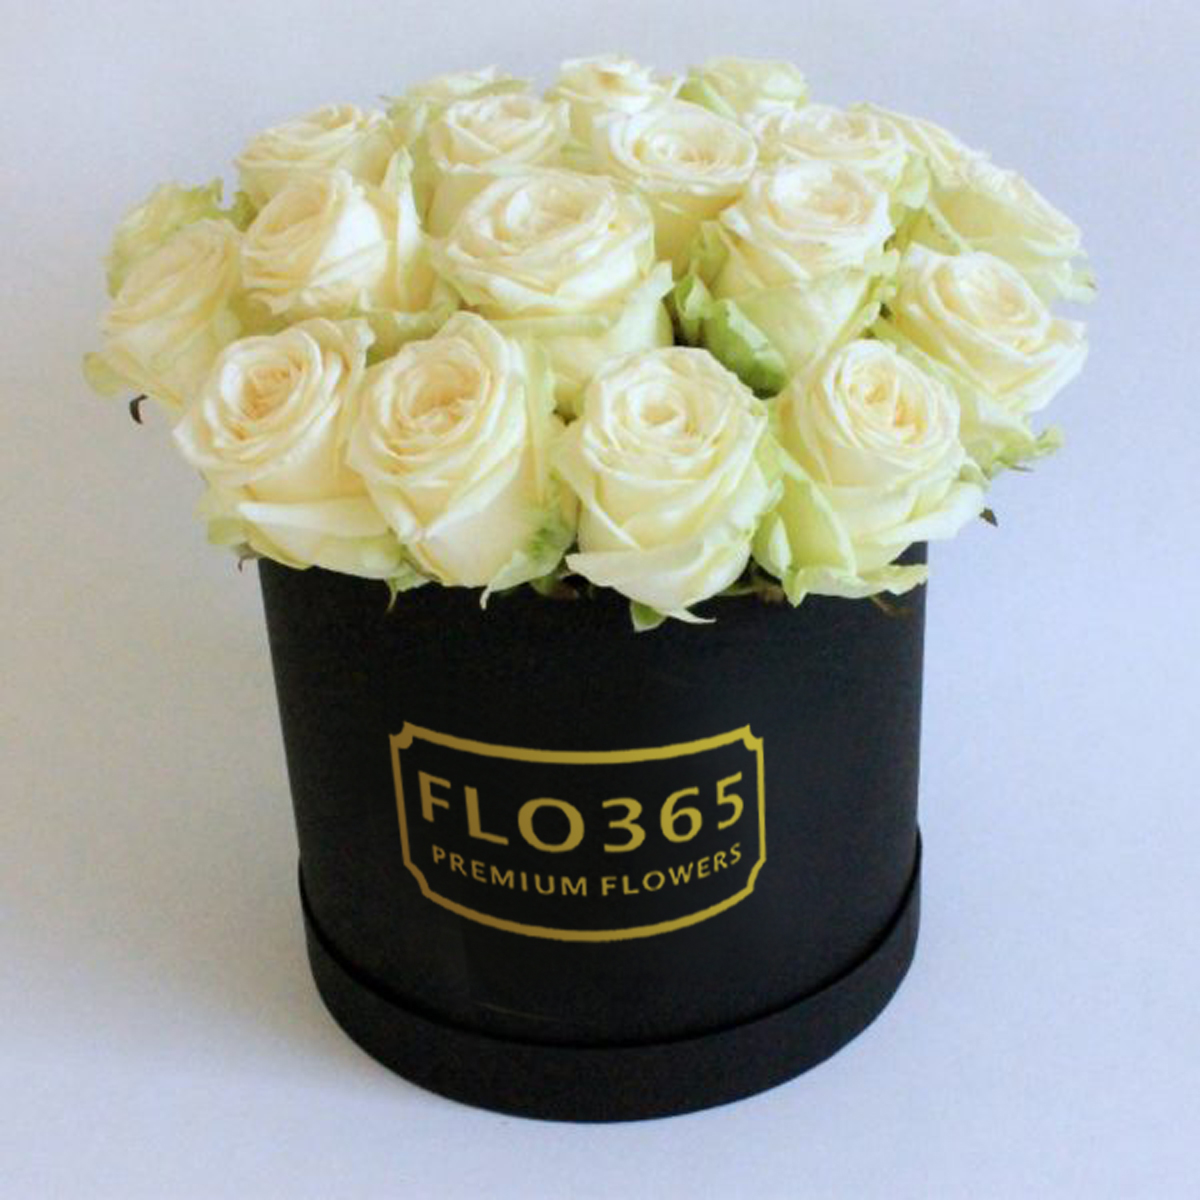 Фото 1 - 25 белых роз в черной коробке